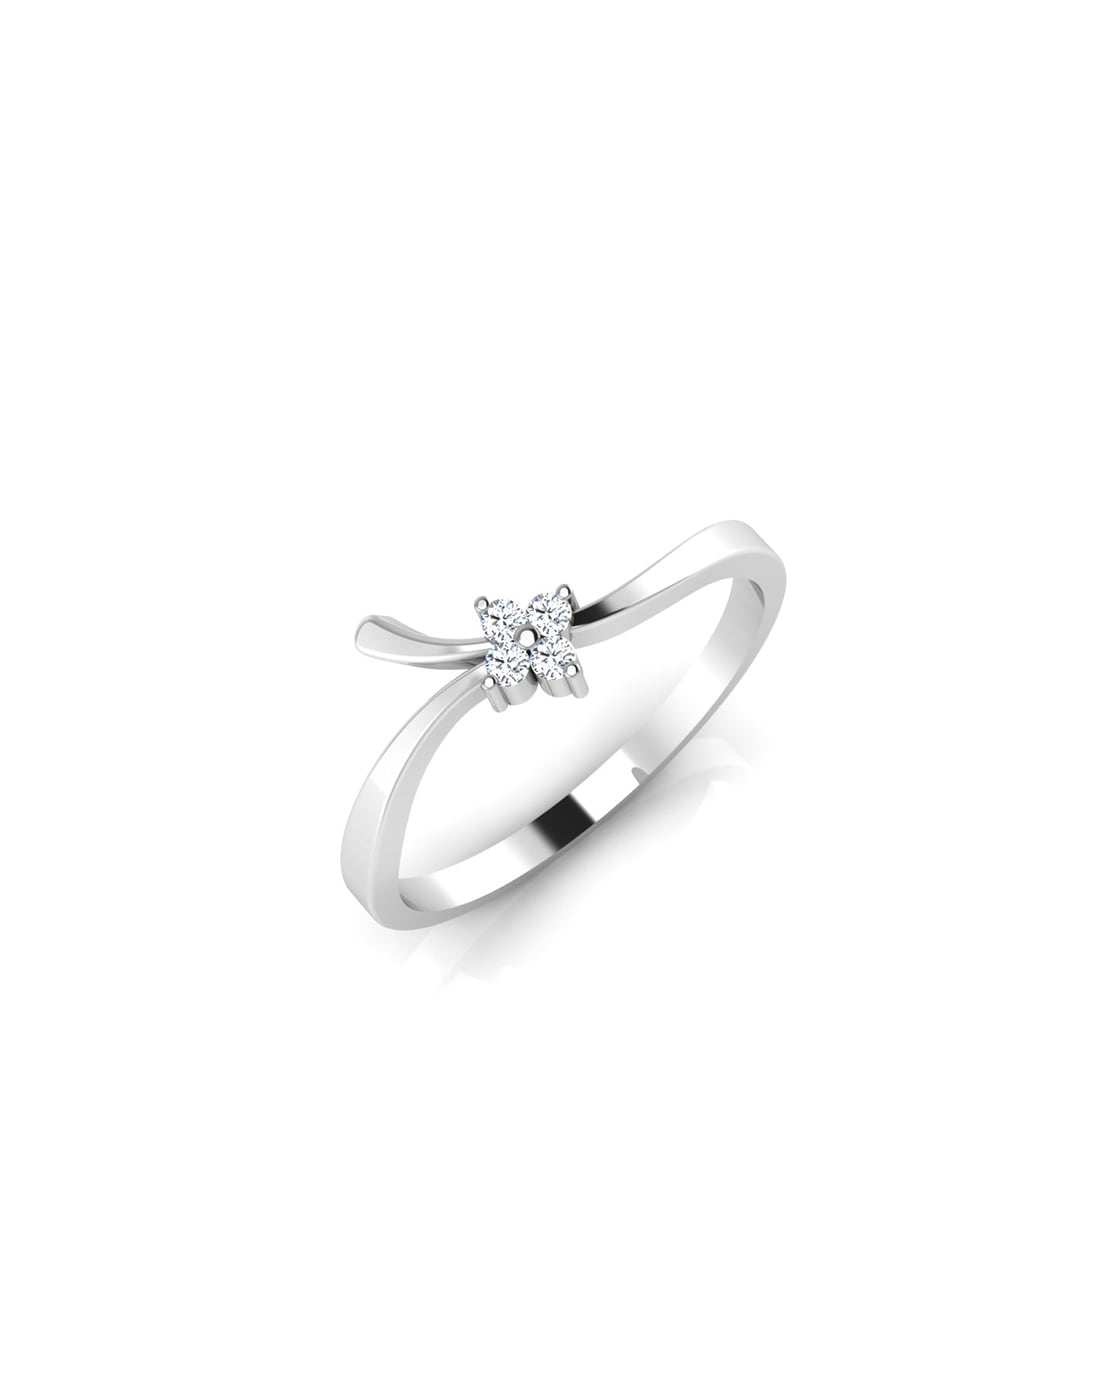 Buy KuberBox 18k Gold Per-Diem Diamond Ring for Women-Girls online